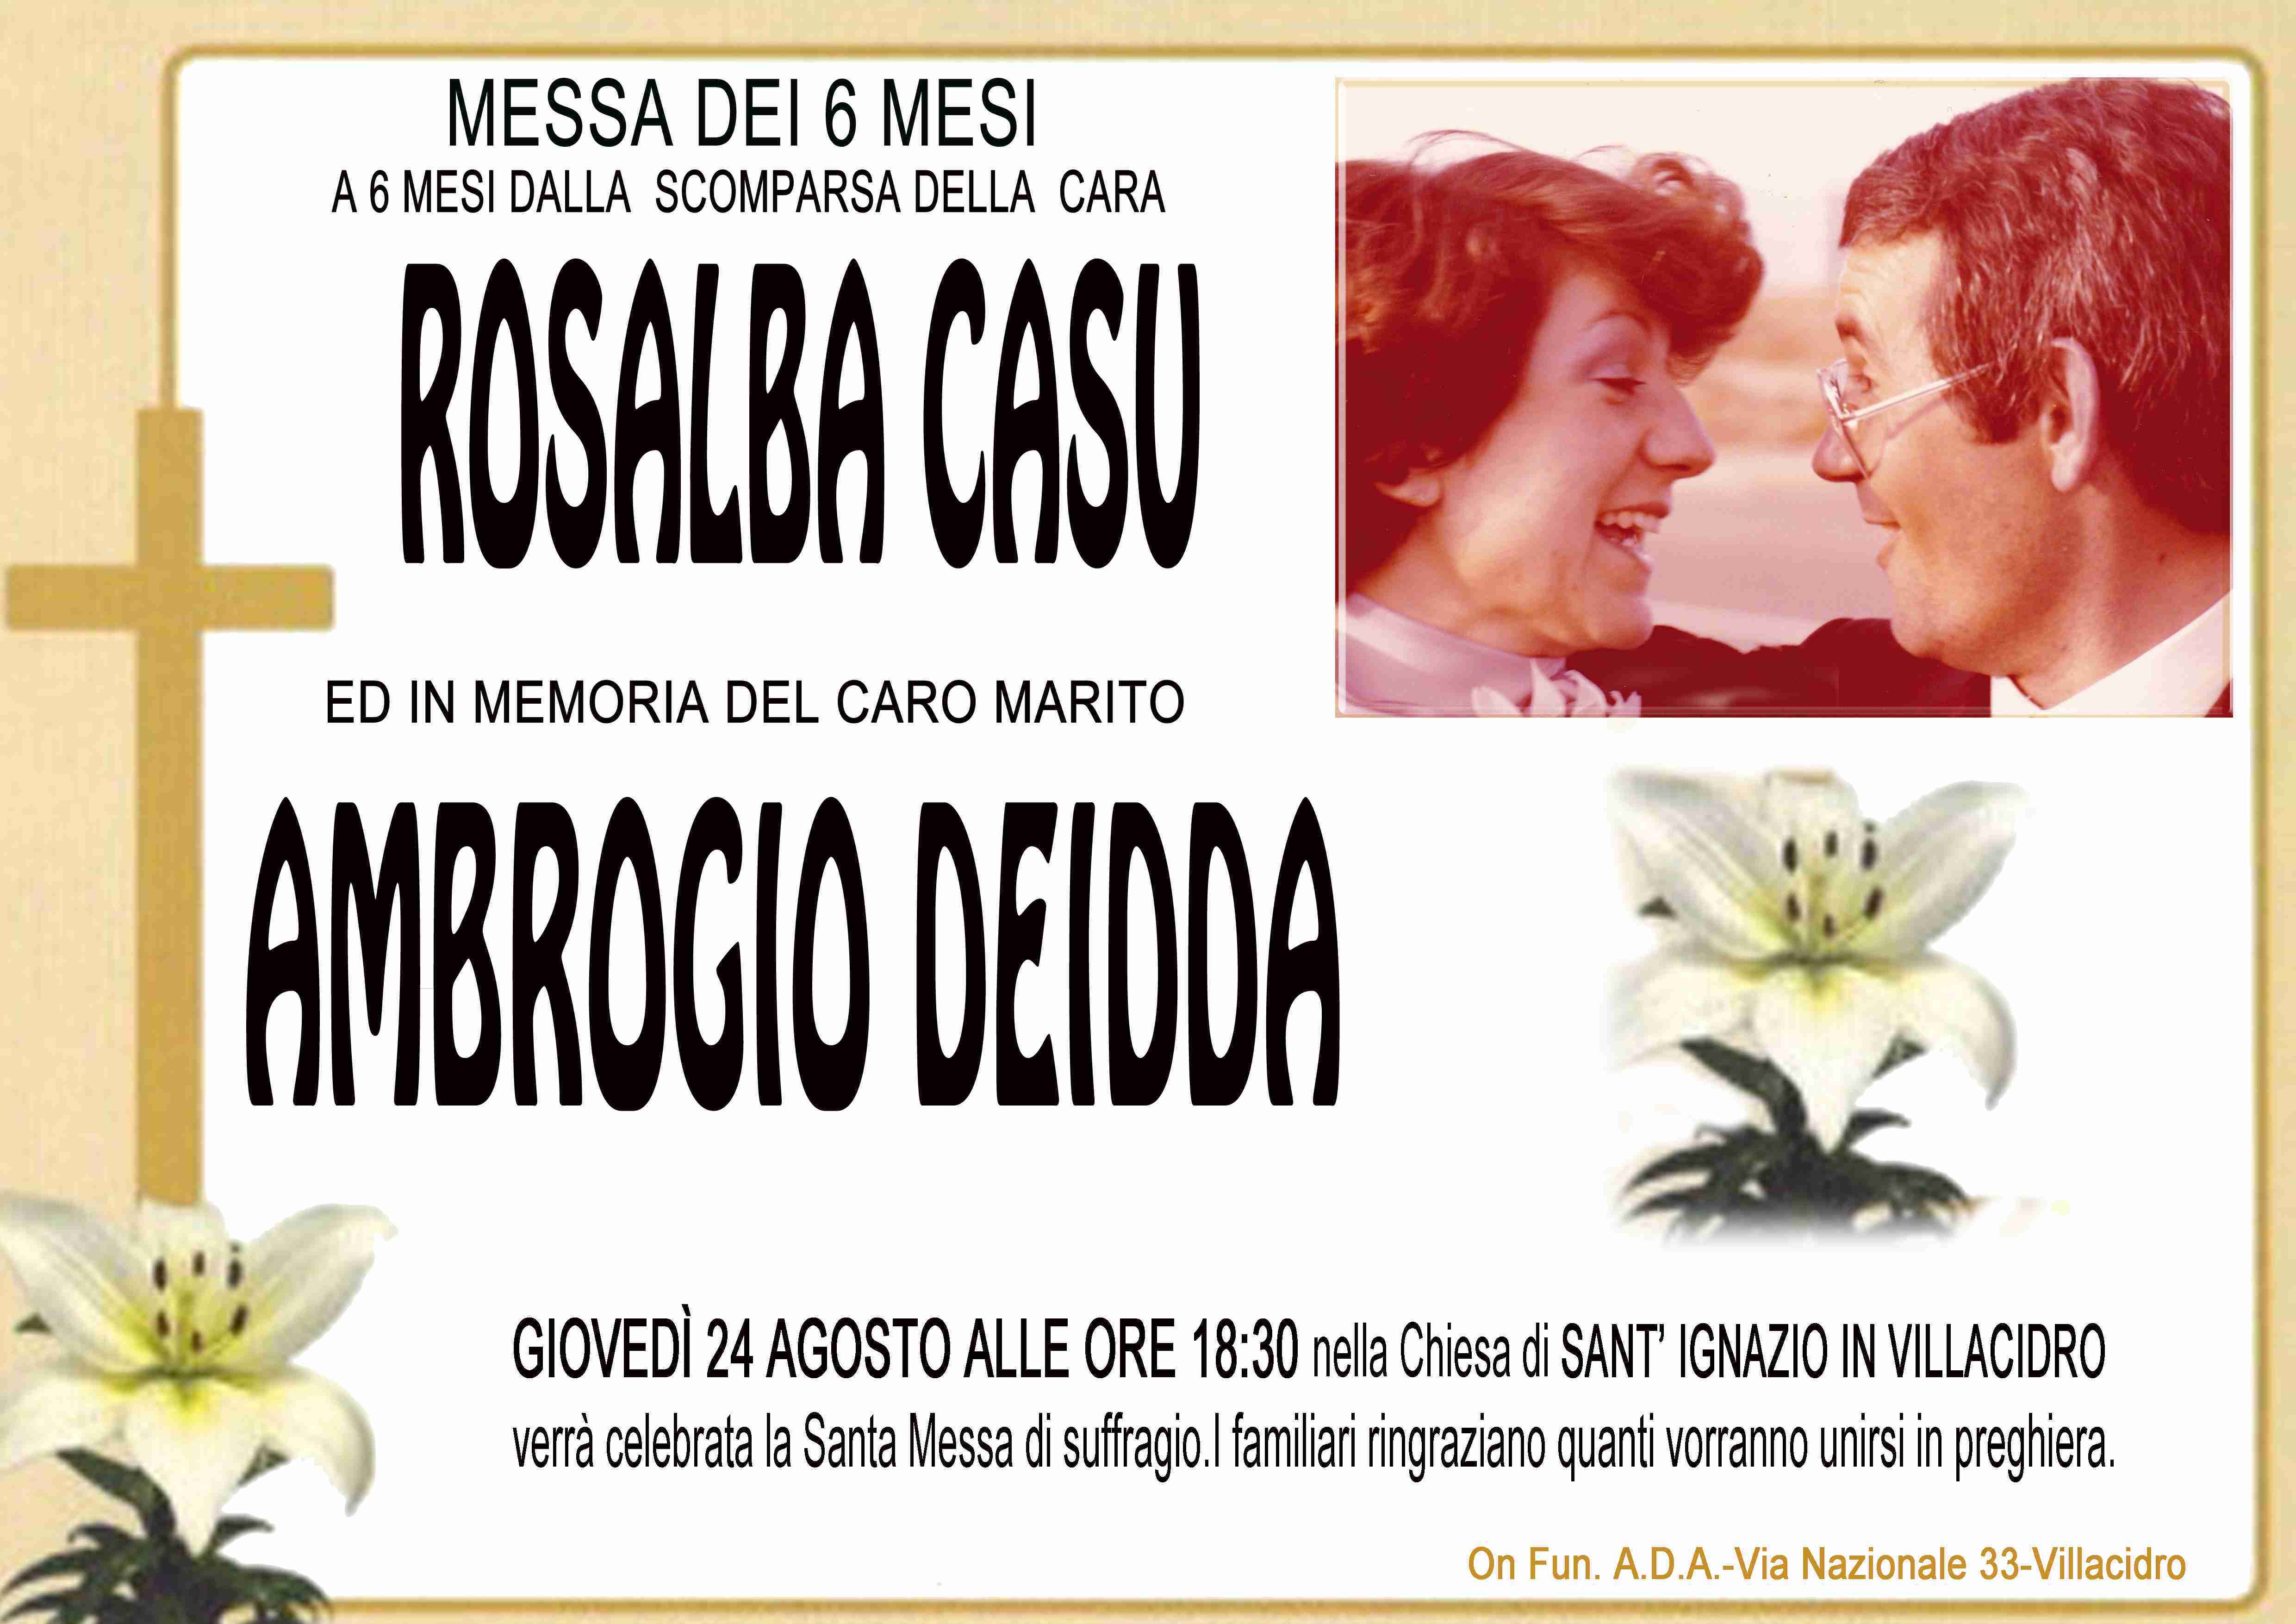 Rosalba Casu